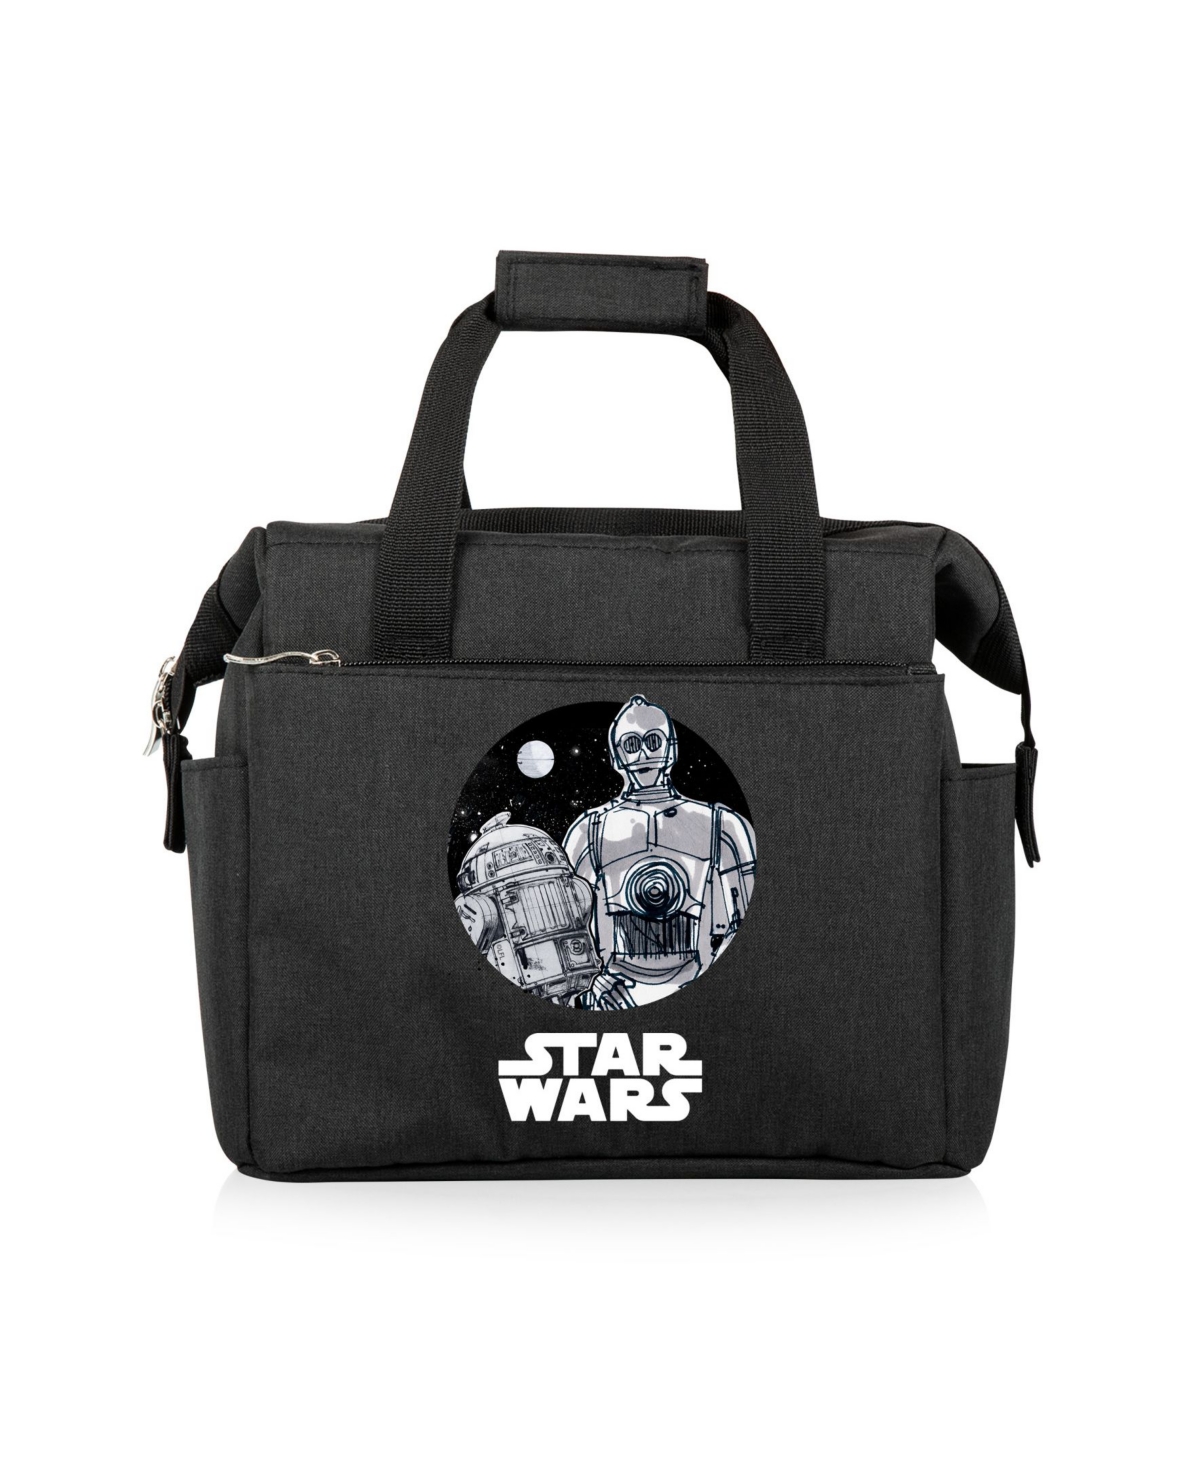 Star wars Cooler Bag - Black